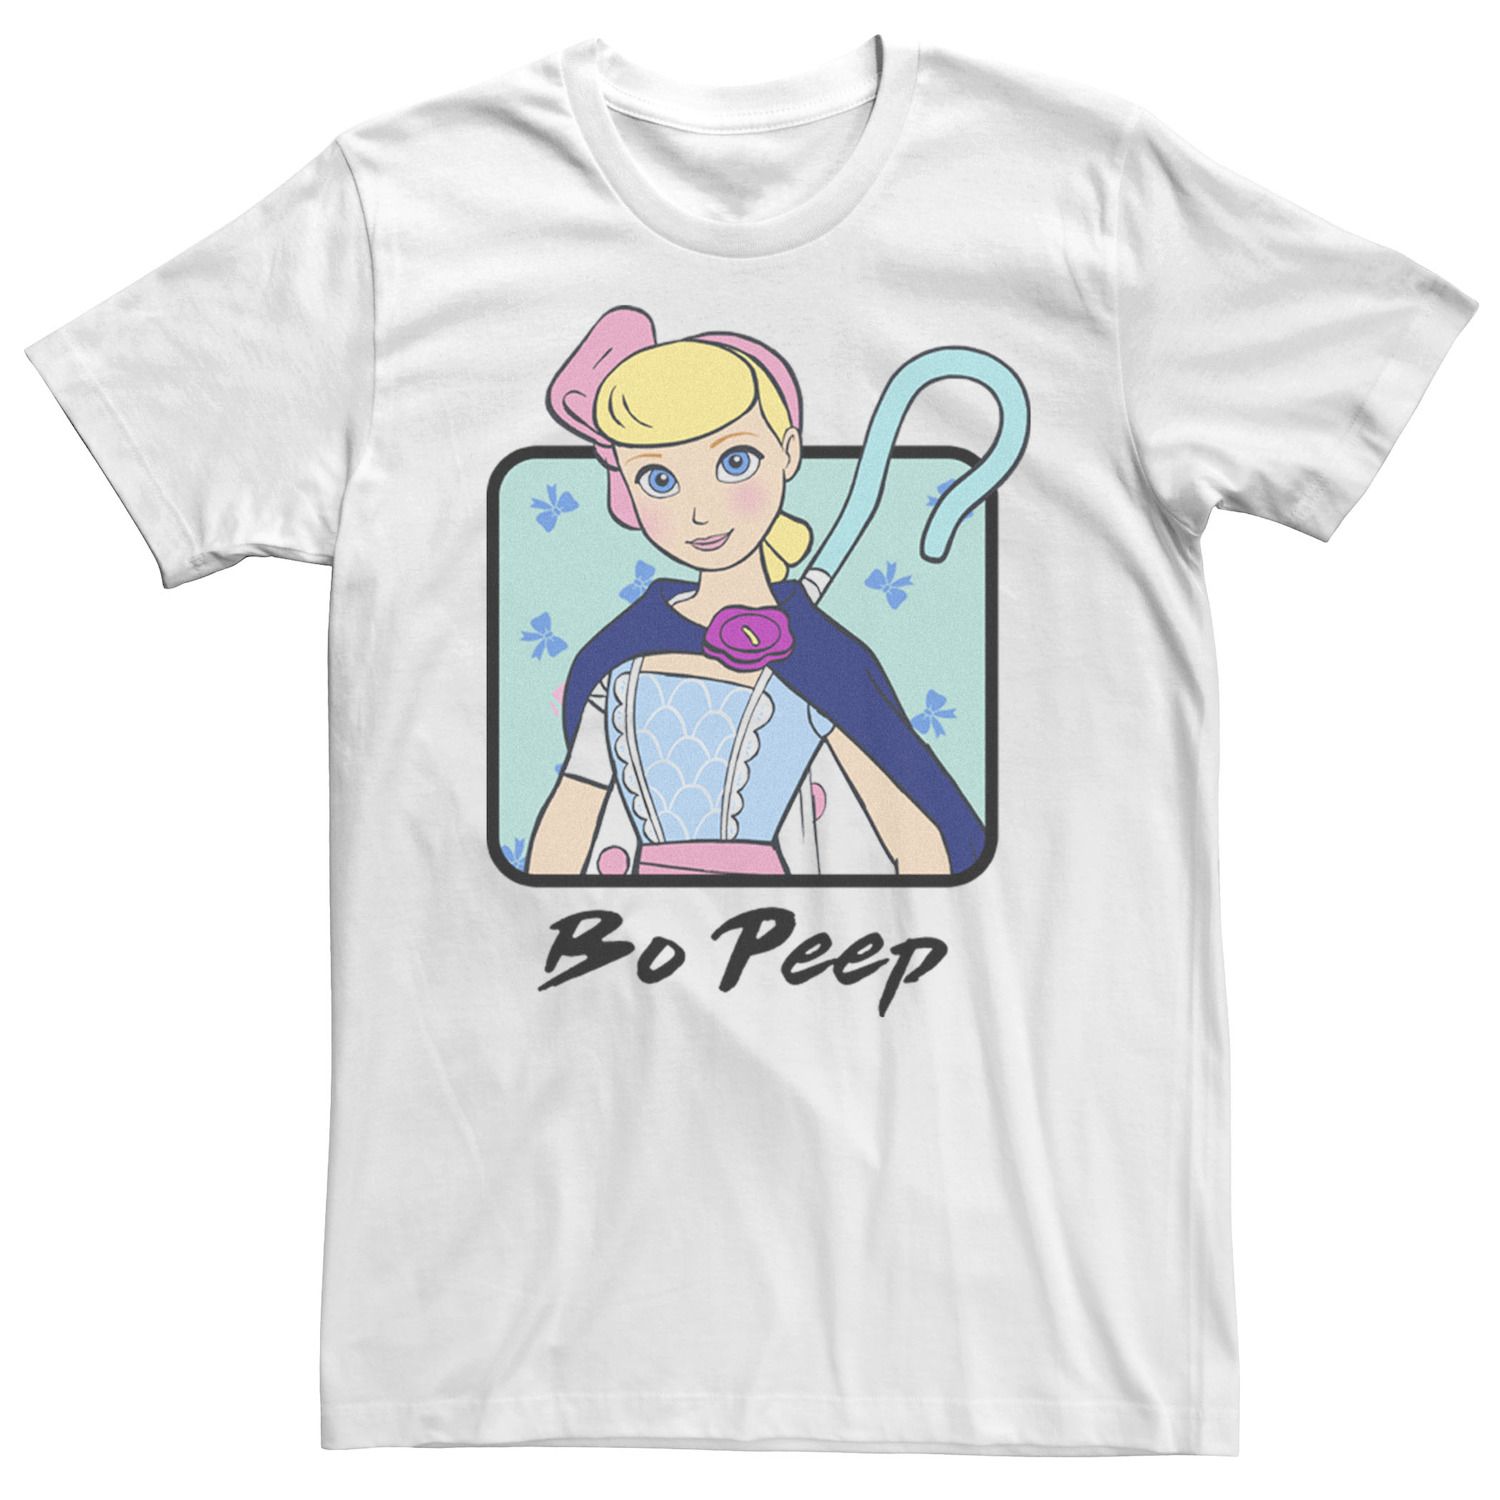 Мужская футболка Toy Story 4 Bo Peep с цветным бюстом и портретом Disney / Pixar фигурка funko pop disney pixar toy story – bo peep white 9 5 см